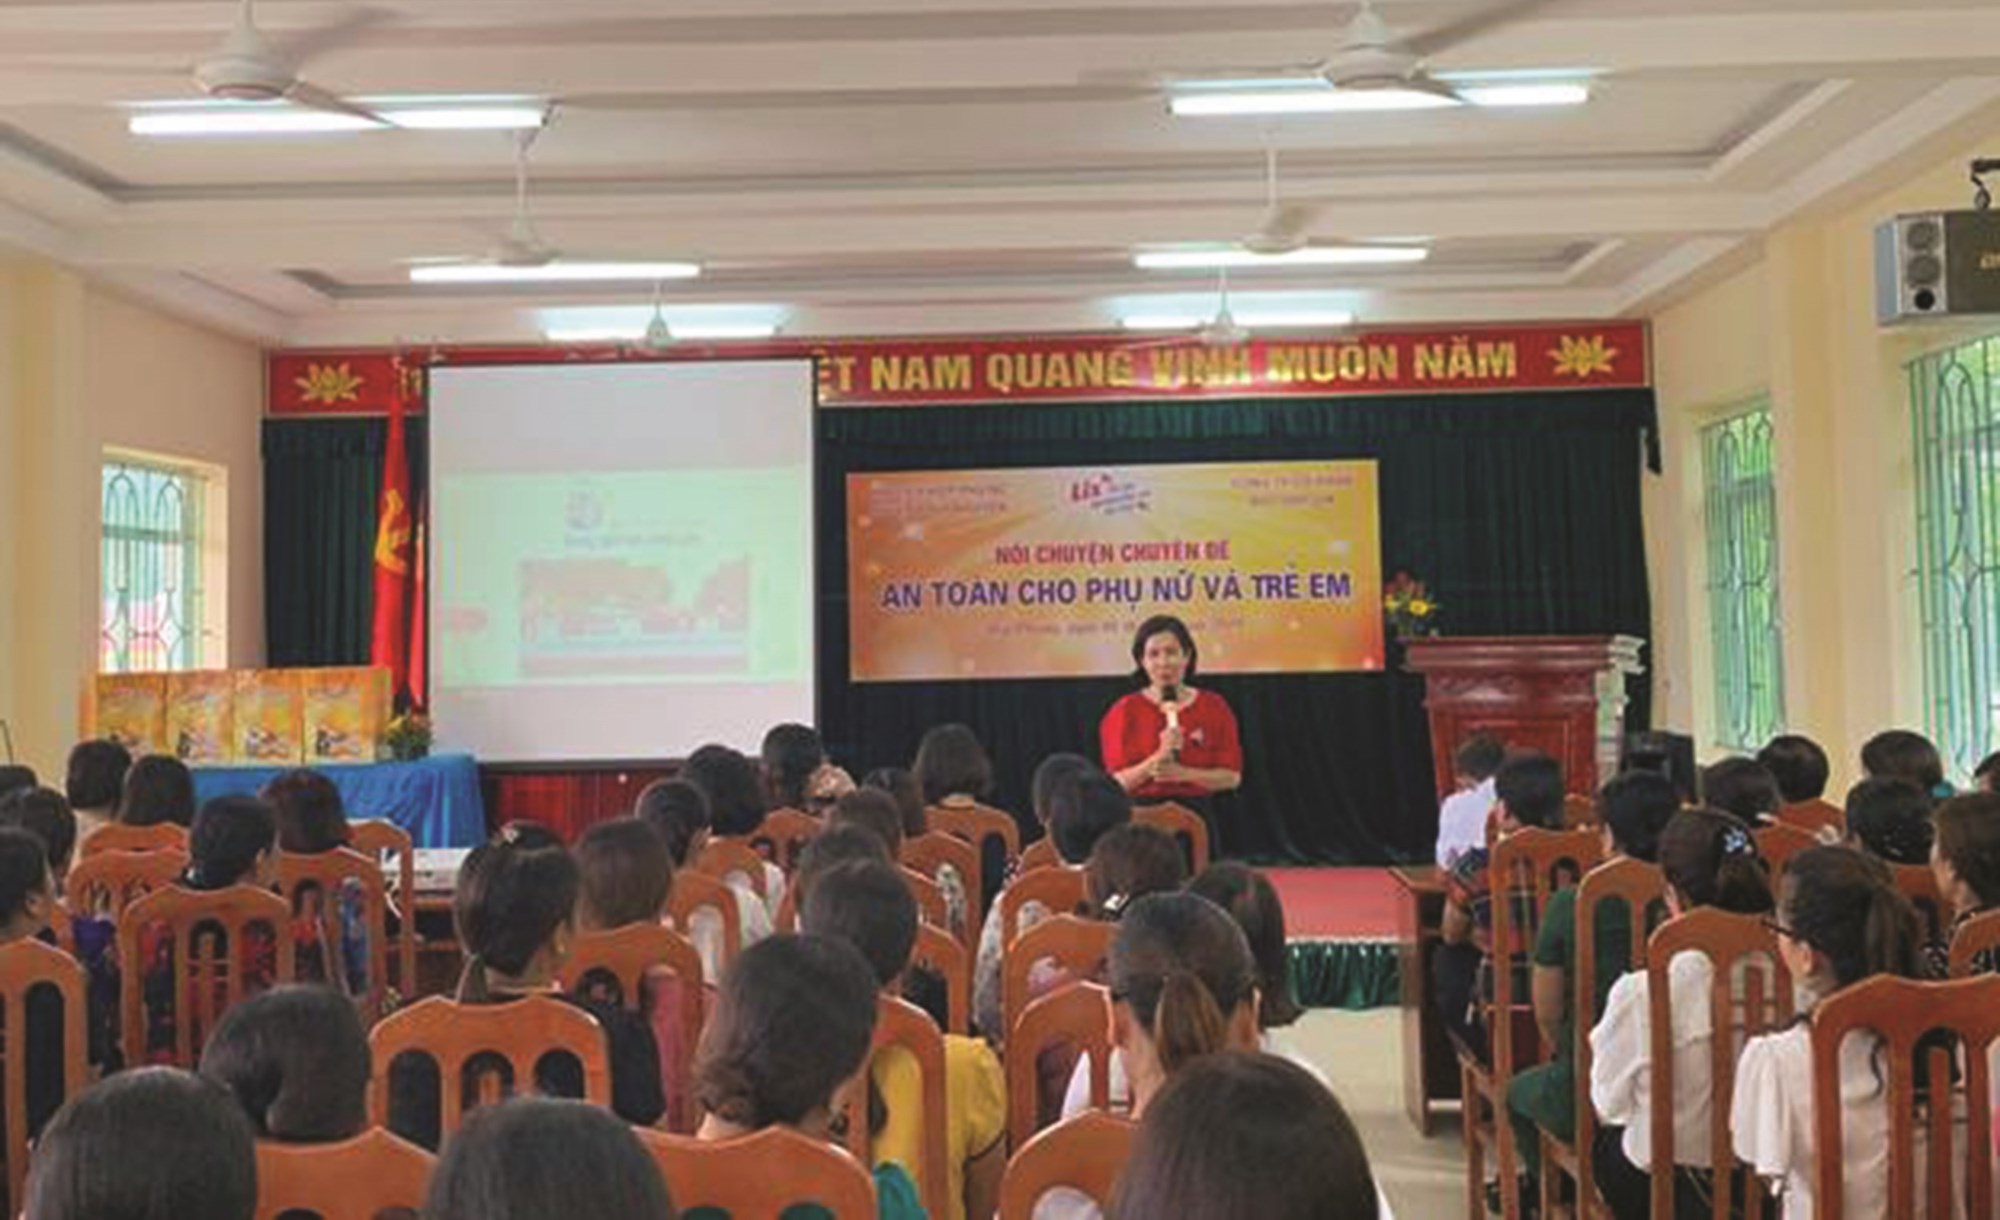 Buổi nói chuyện chuyên đề “An toàn cho phụ nữ và trẻ em” của Công ty Cổ phần Bột giặt Lix tại Hội Phụ nữ huyện Thủy Nguyên, TP Hải Phòng. 